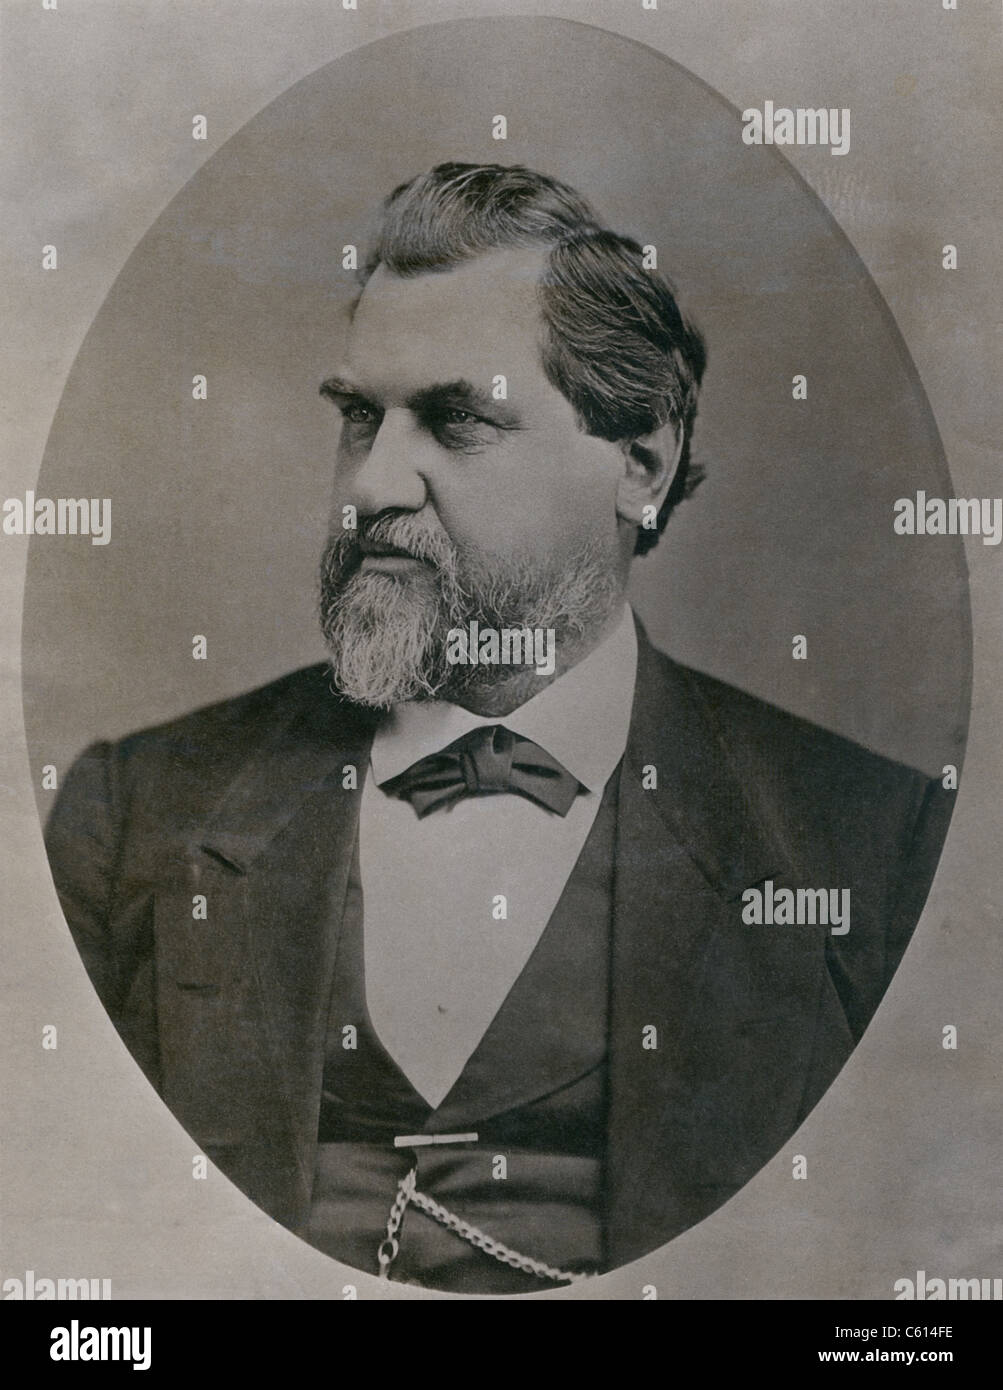 Leland Stanford 1824-1893 wurde durch den Goldrausch in den 1850er Jahren nach Kalifornien gezogen. Er war ein Schlüssel Investor in der Central Pacific Railroad wurde Gouverneur und US-Senator gewählt und Stanford University gegründet. Ca. 1870. (BSLOC 2010 18 150) Stockfoto